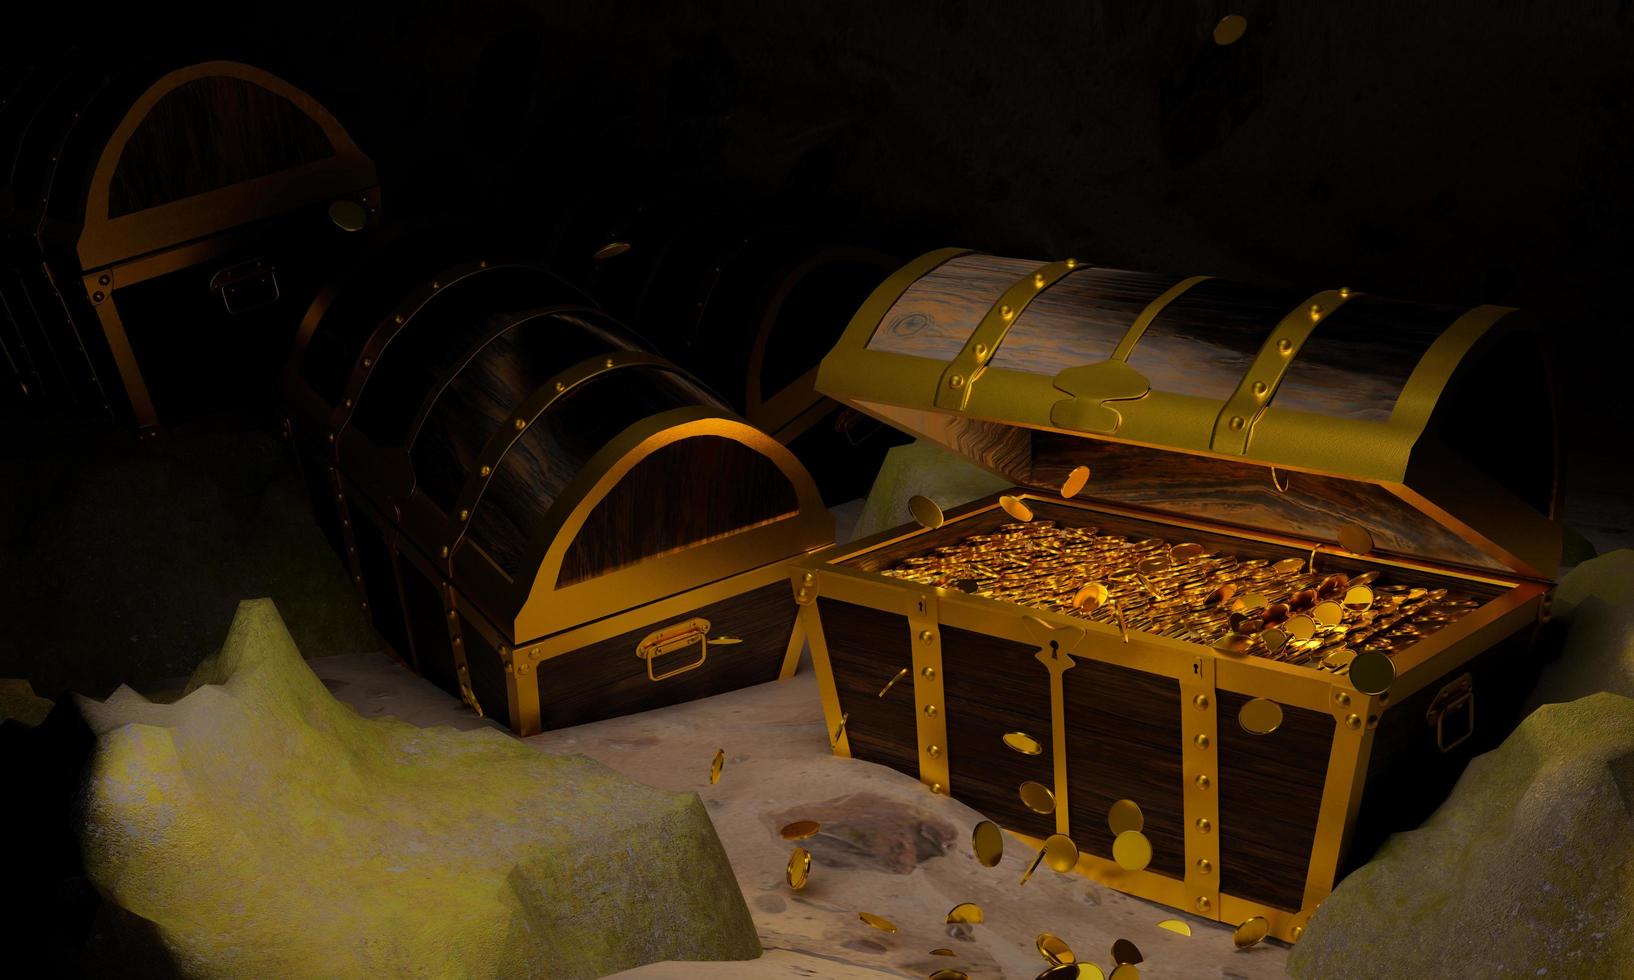 monete d'oro nello scrigno antico e vintage realizzati con pannelli di legno rinforzati con metallo dorato e spille dorate scatole del tesoro posizionate sulla sabbia in una grotta o scrigno del tesoro sott'acqua foto